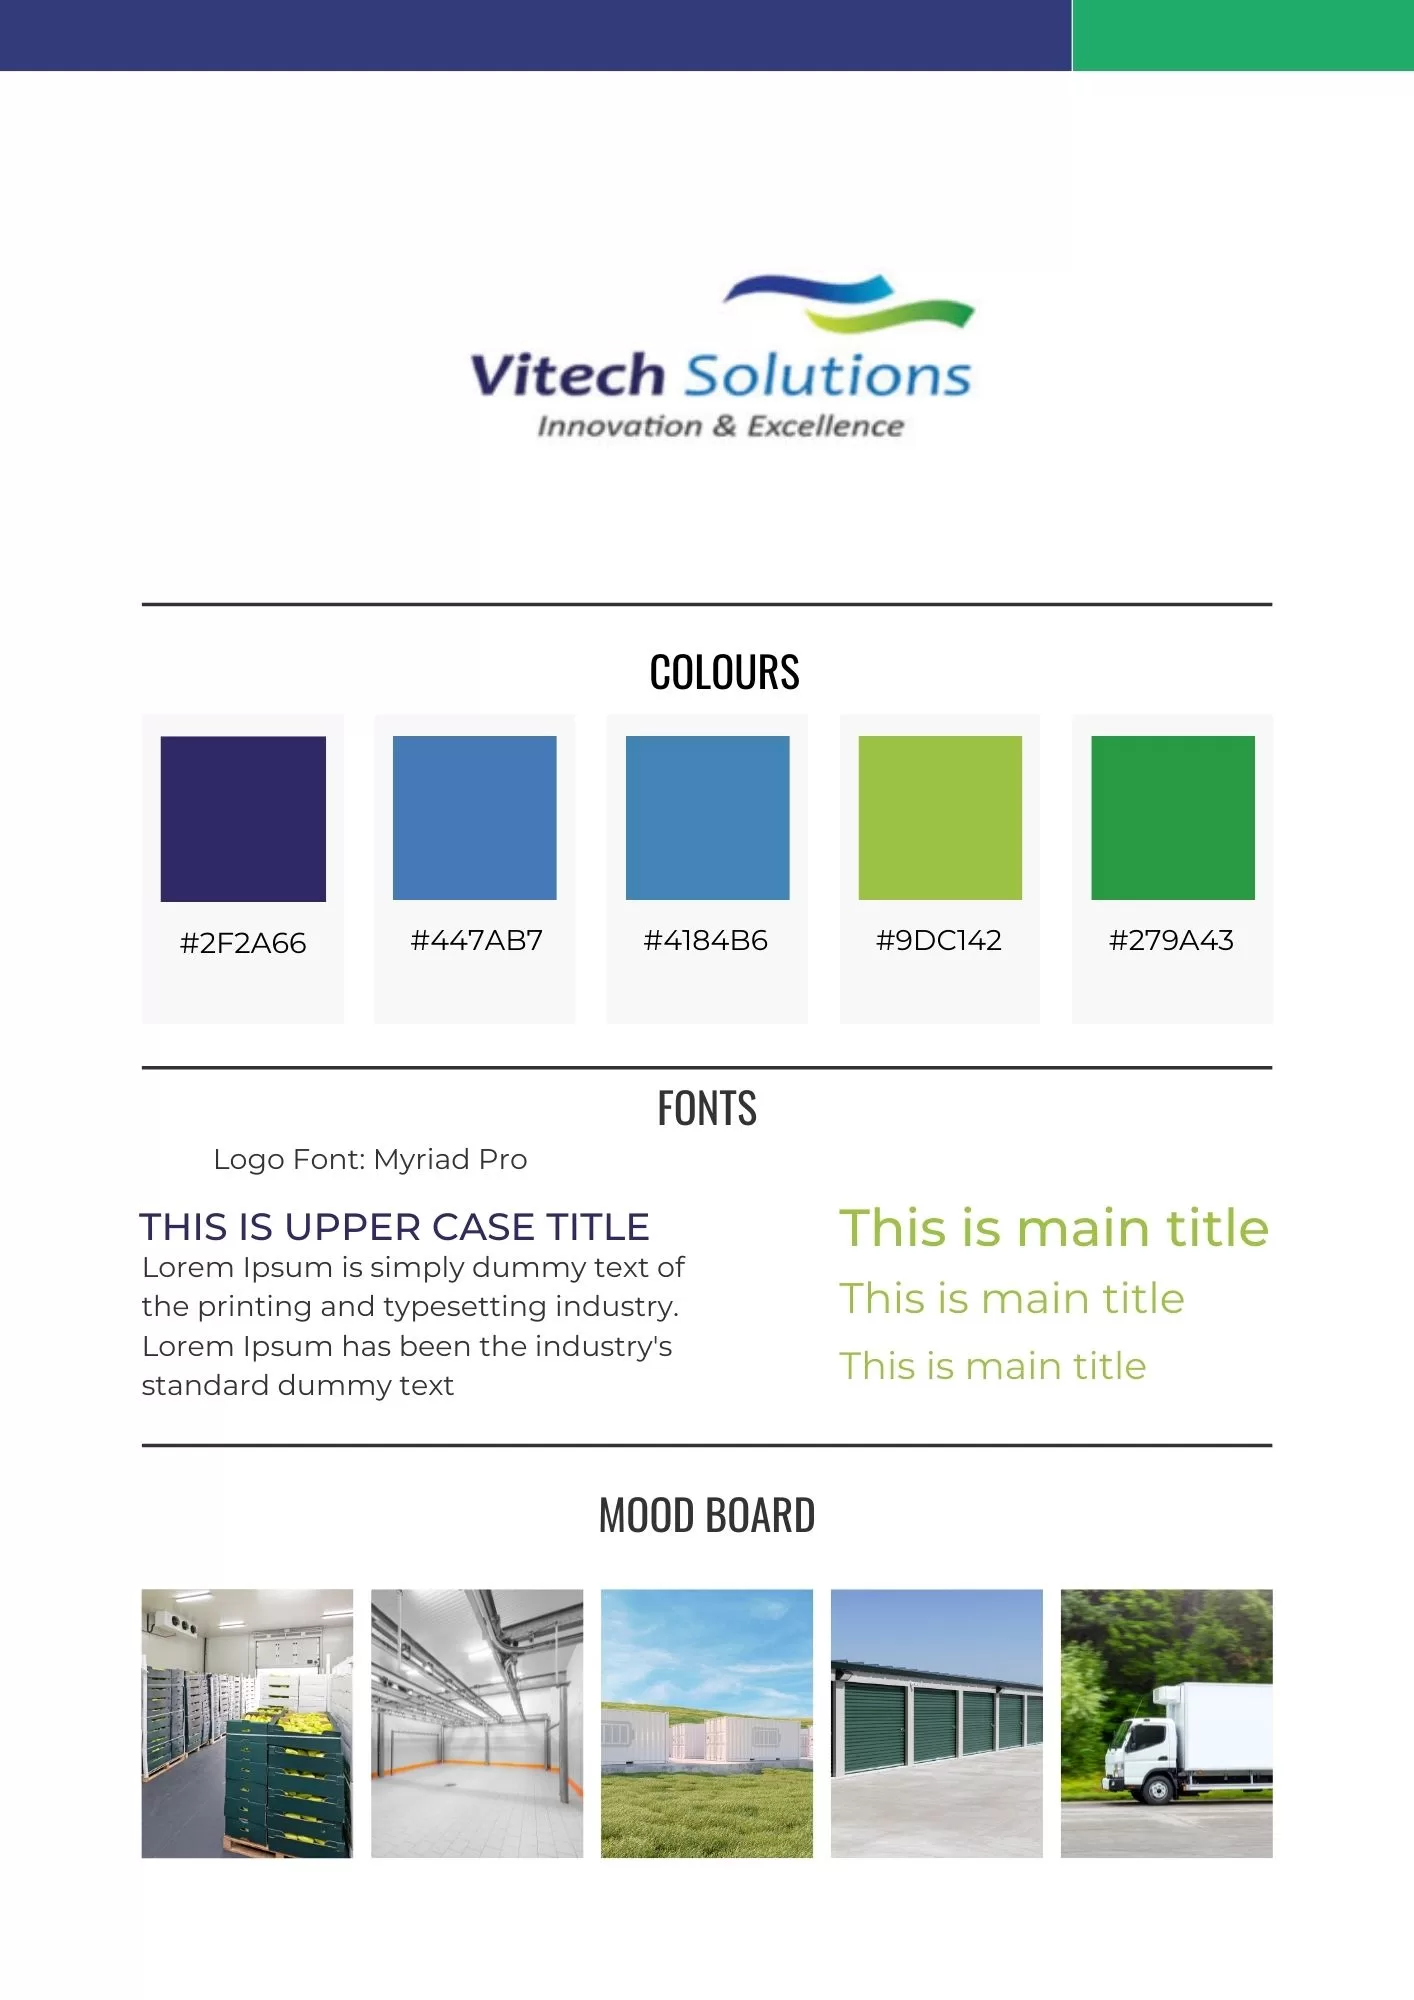 Vitech Solutions Branding